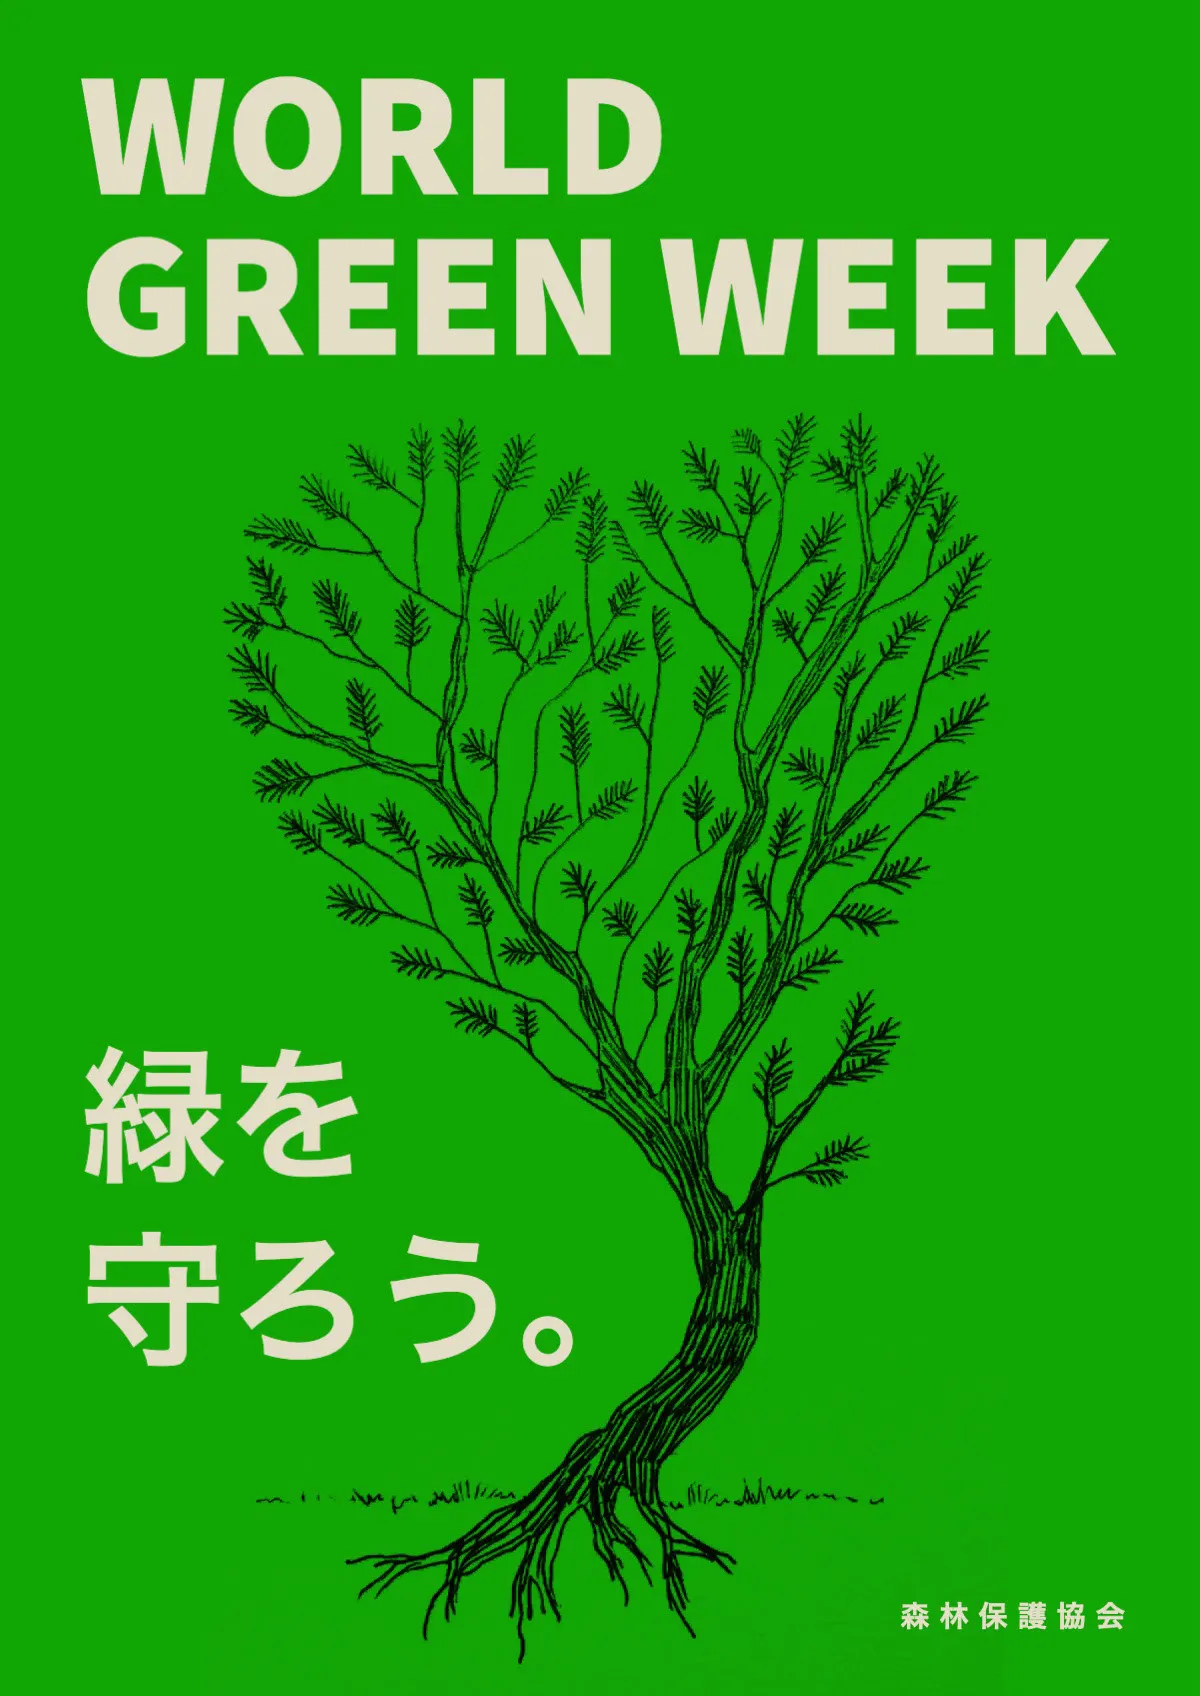 World Green Week poster